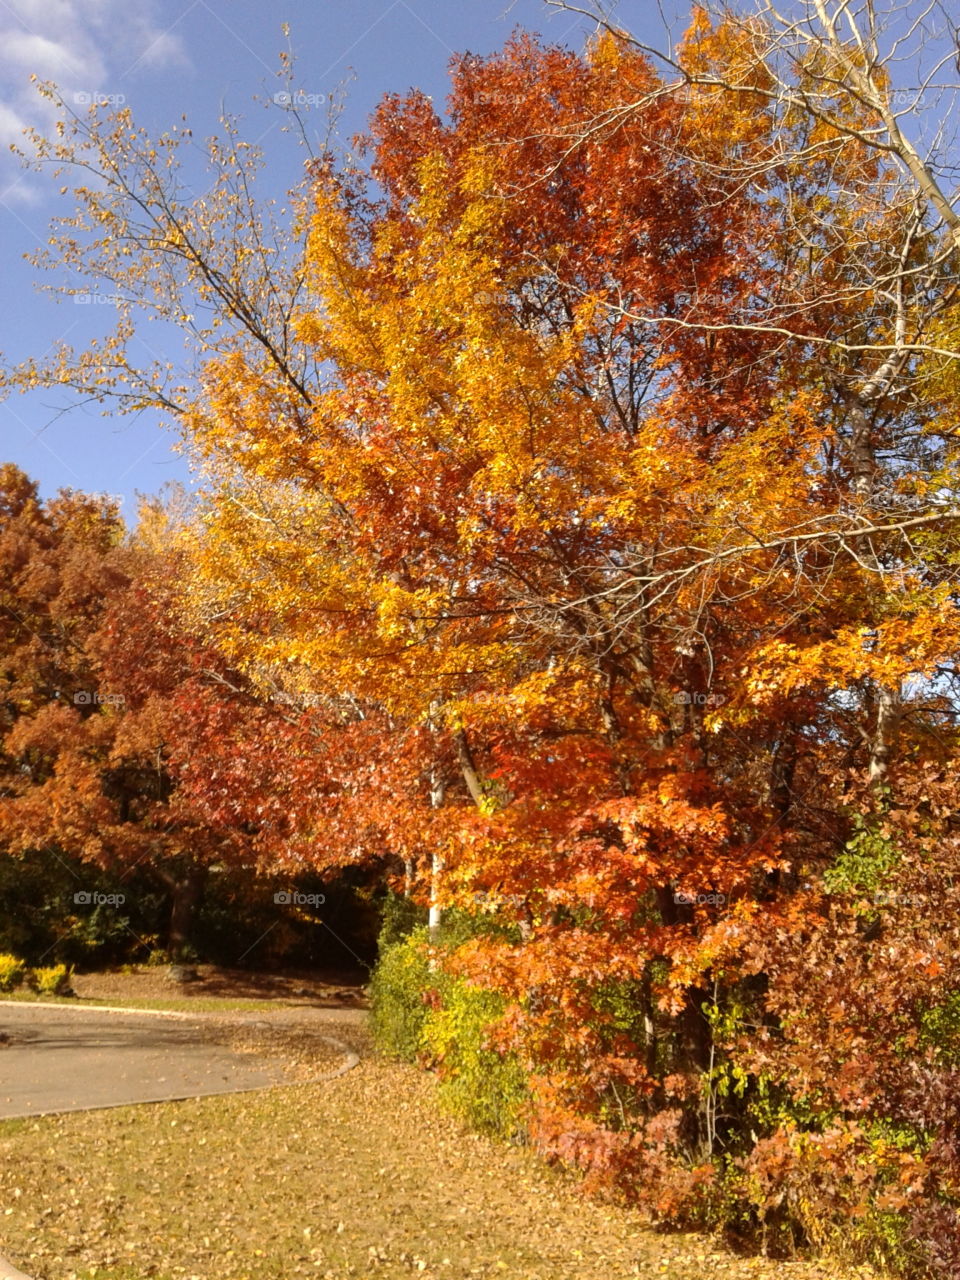 Fall, Leaf, Tree, Season, Nature